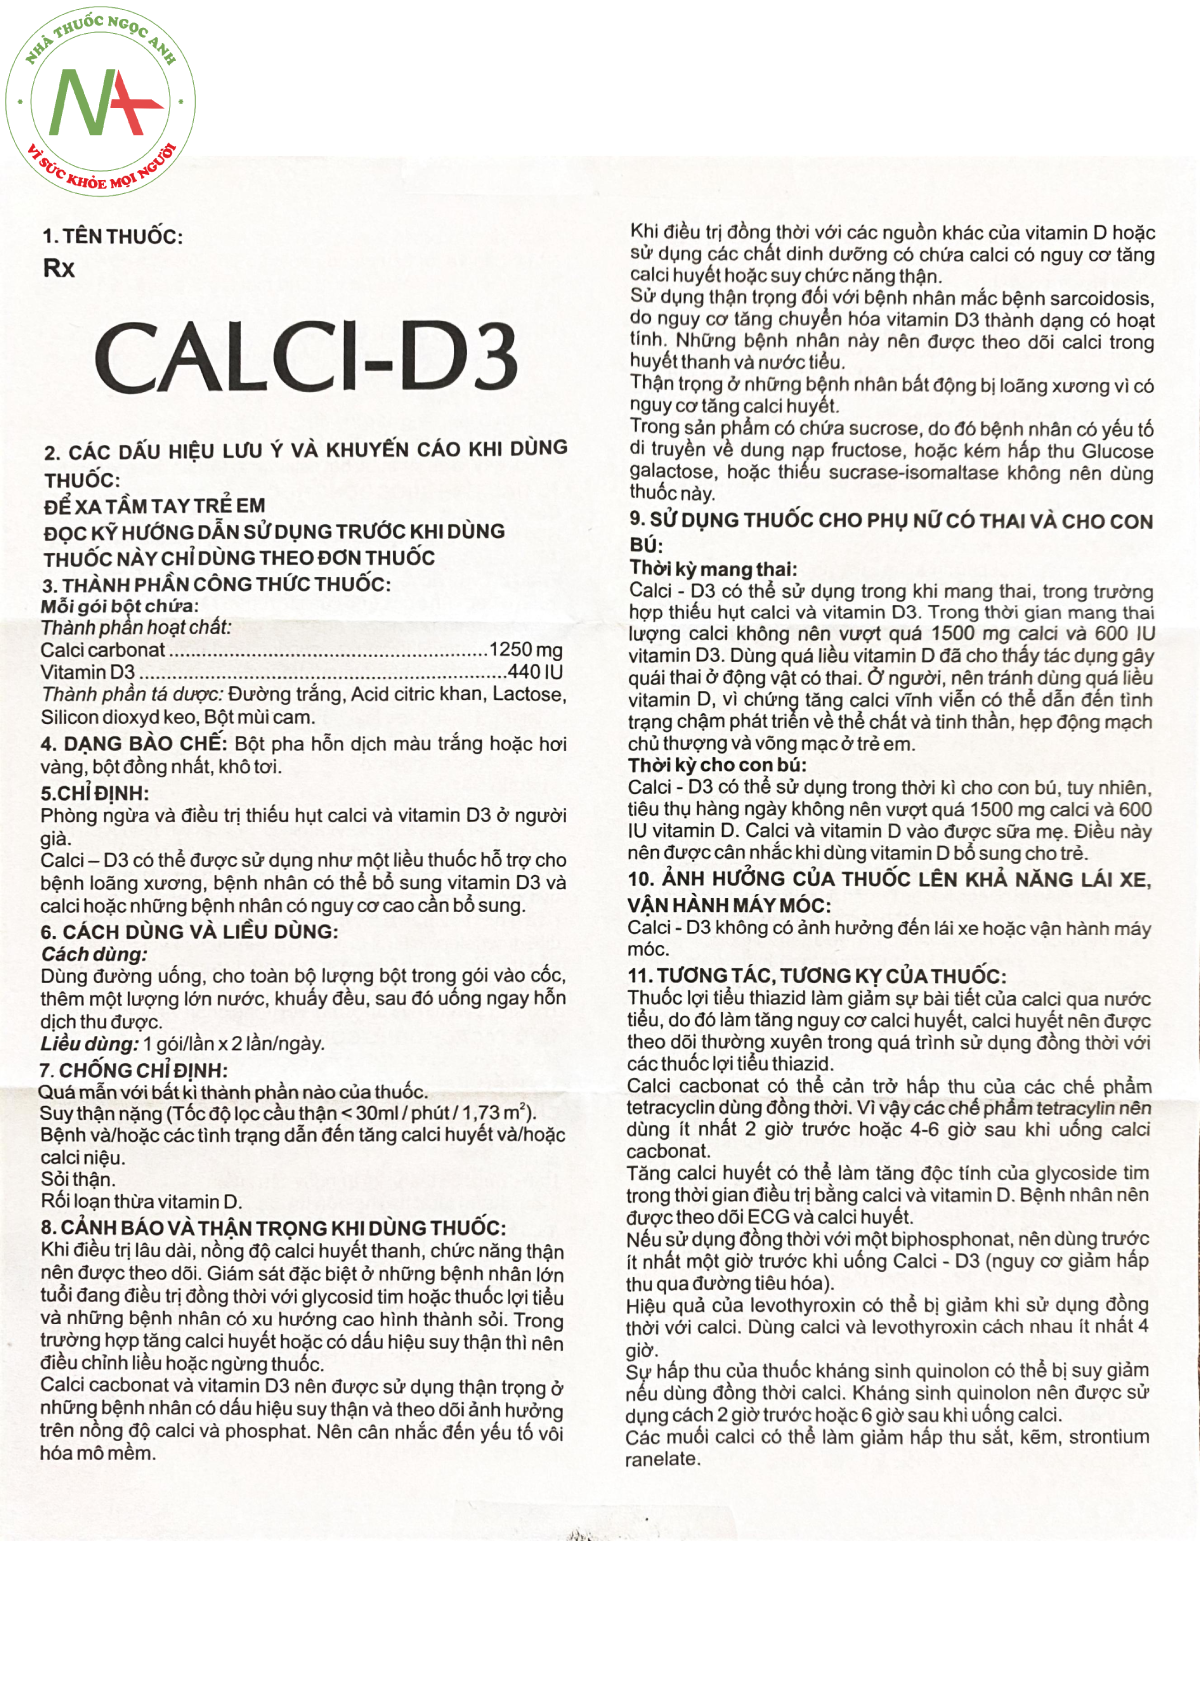 Hướng dẫn sử dụng thuốc Calci-D3